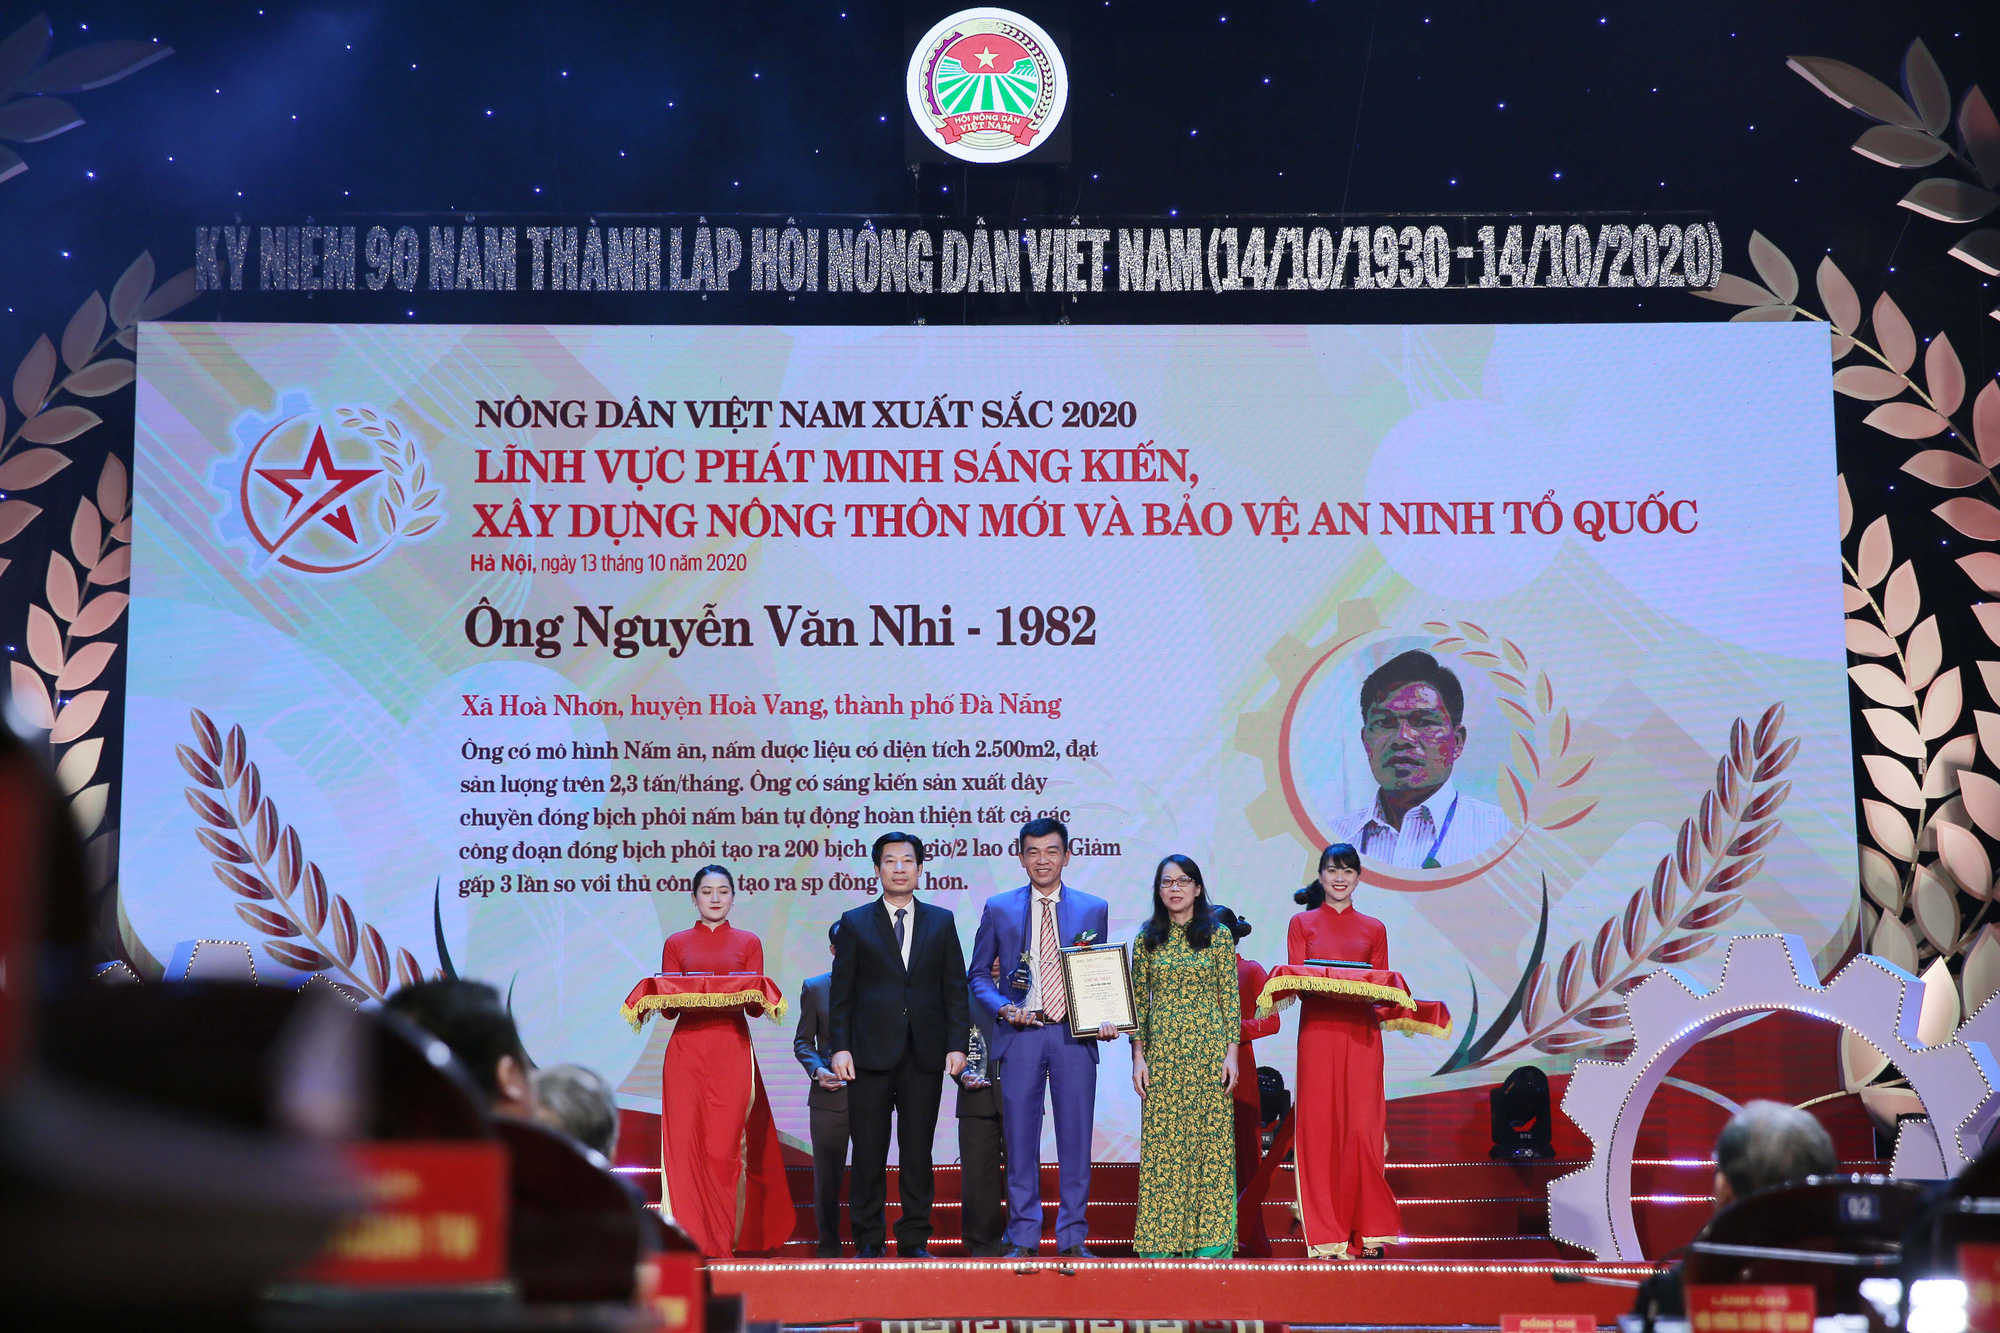 Ảnh: Toàn cảnh Lễ tôn vinh và trao danh hiệu 63 Nông dân Việt Nam xuất sắc 2020 - Ảnh 13.